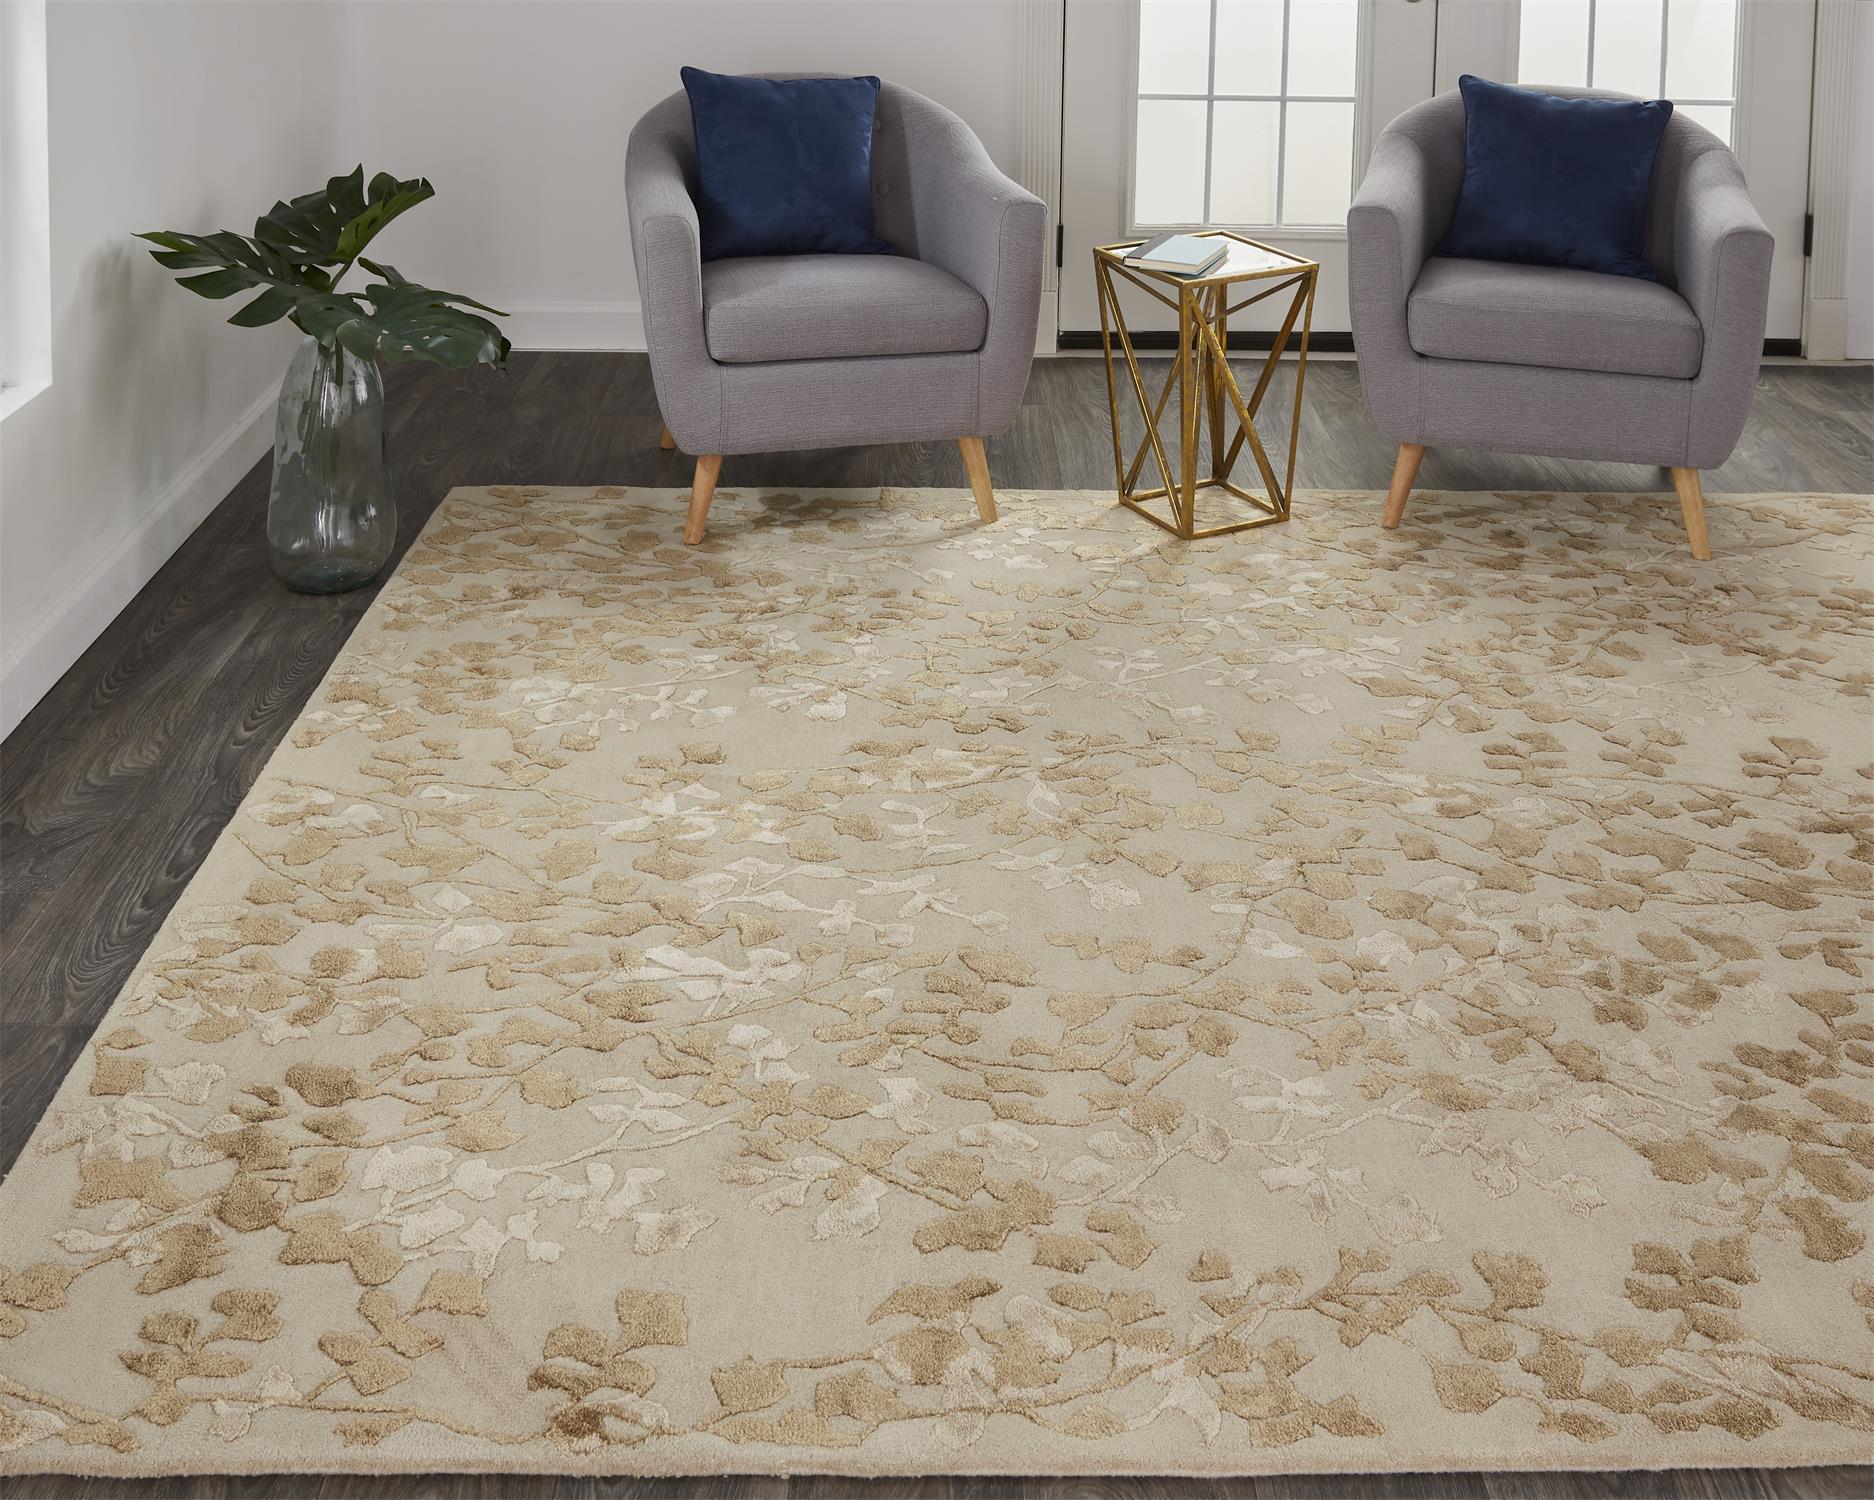 Fashion RUG Cashew Flower Wet Grass Carpet Designer Bedroom Floor Mat From  Chase5188, $43.28